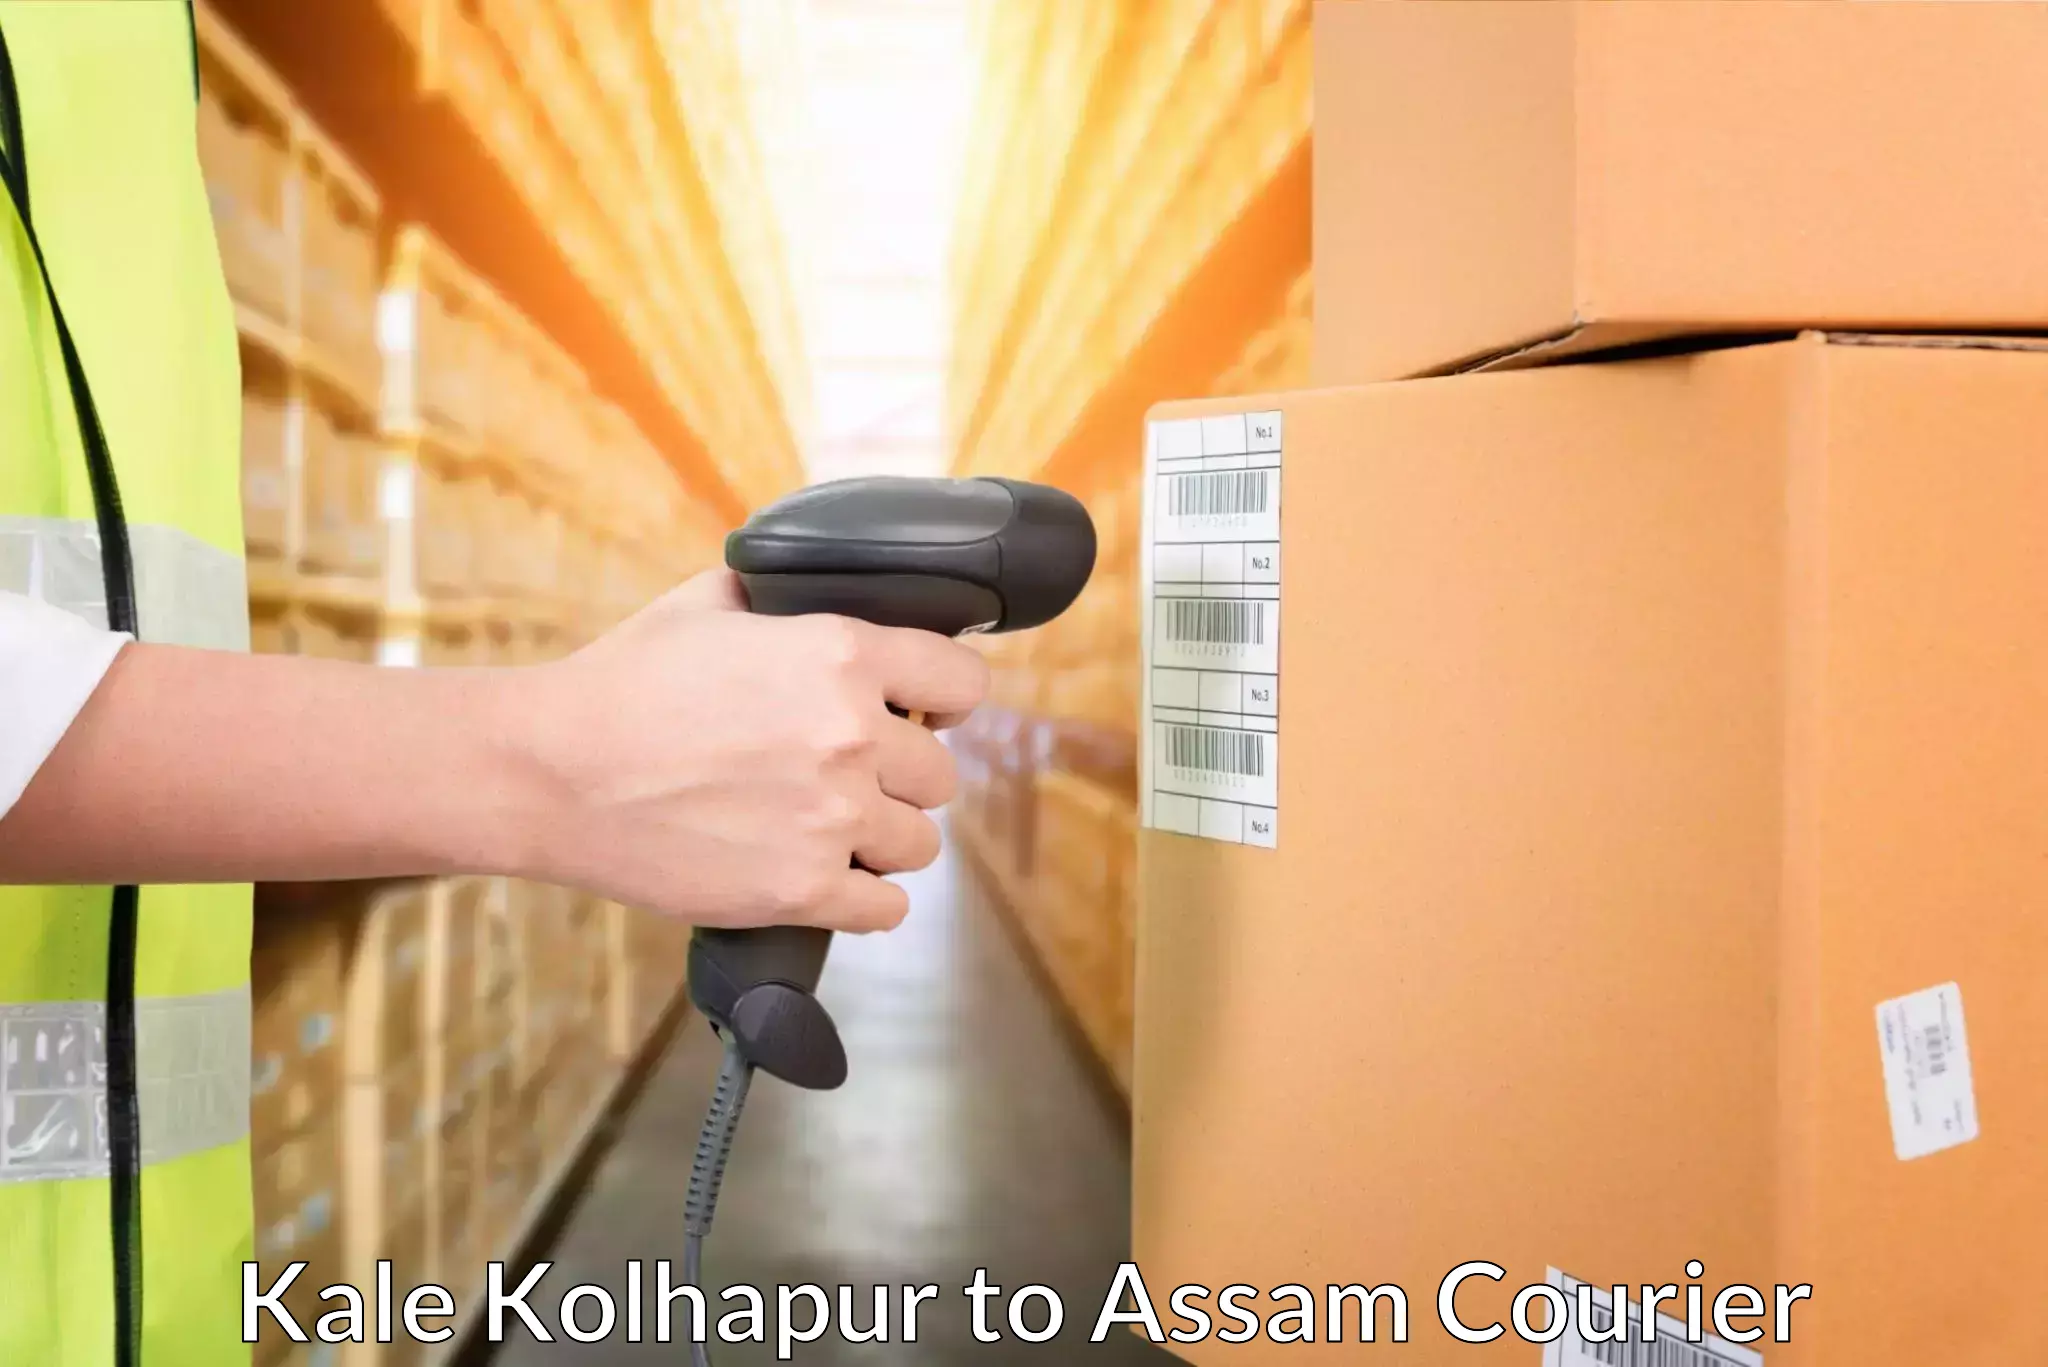 Quick dispatch service Kale Kolhapur to Chapar